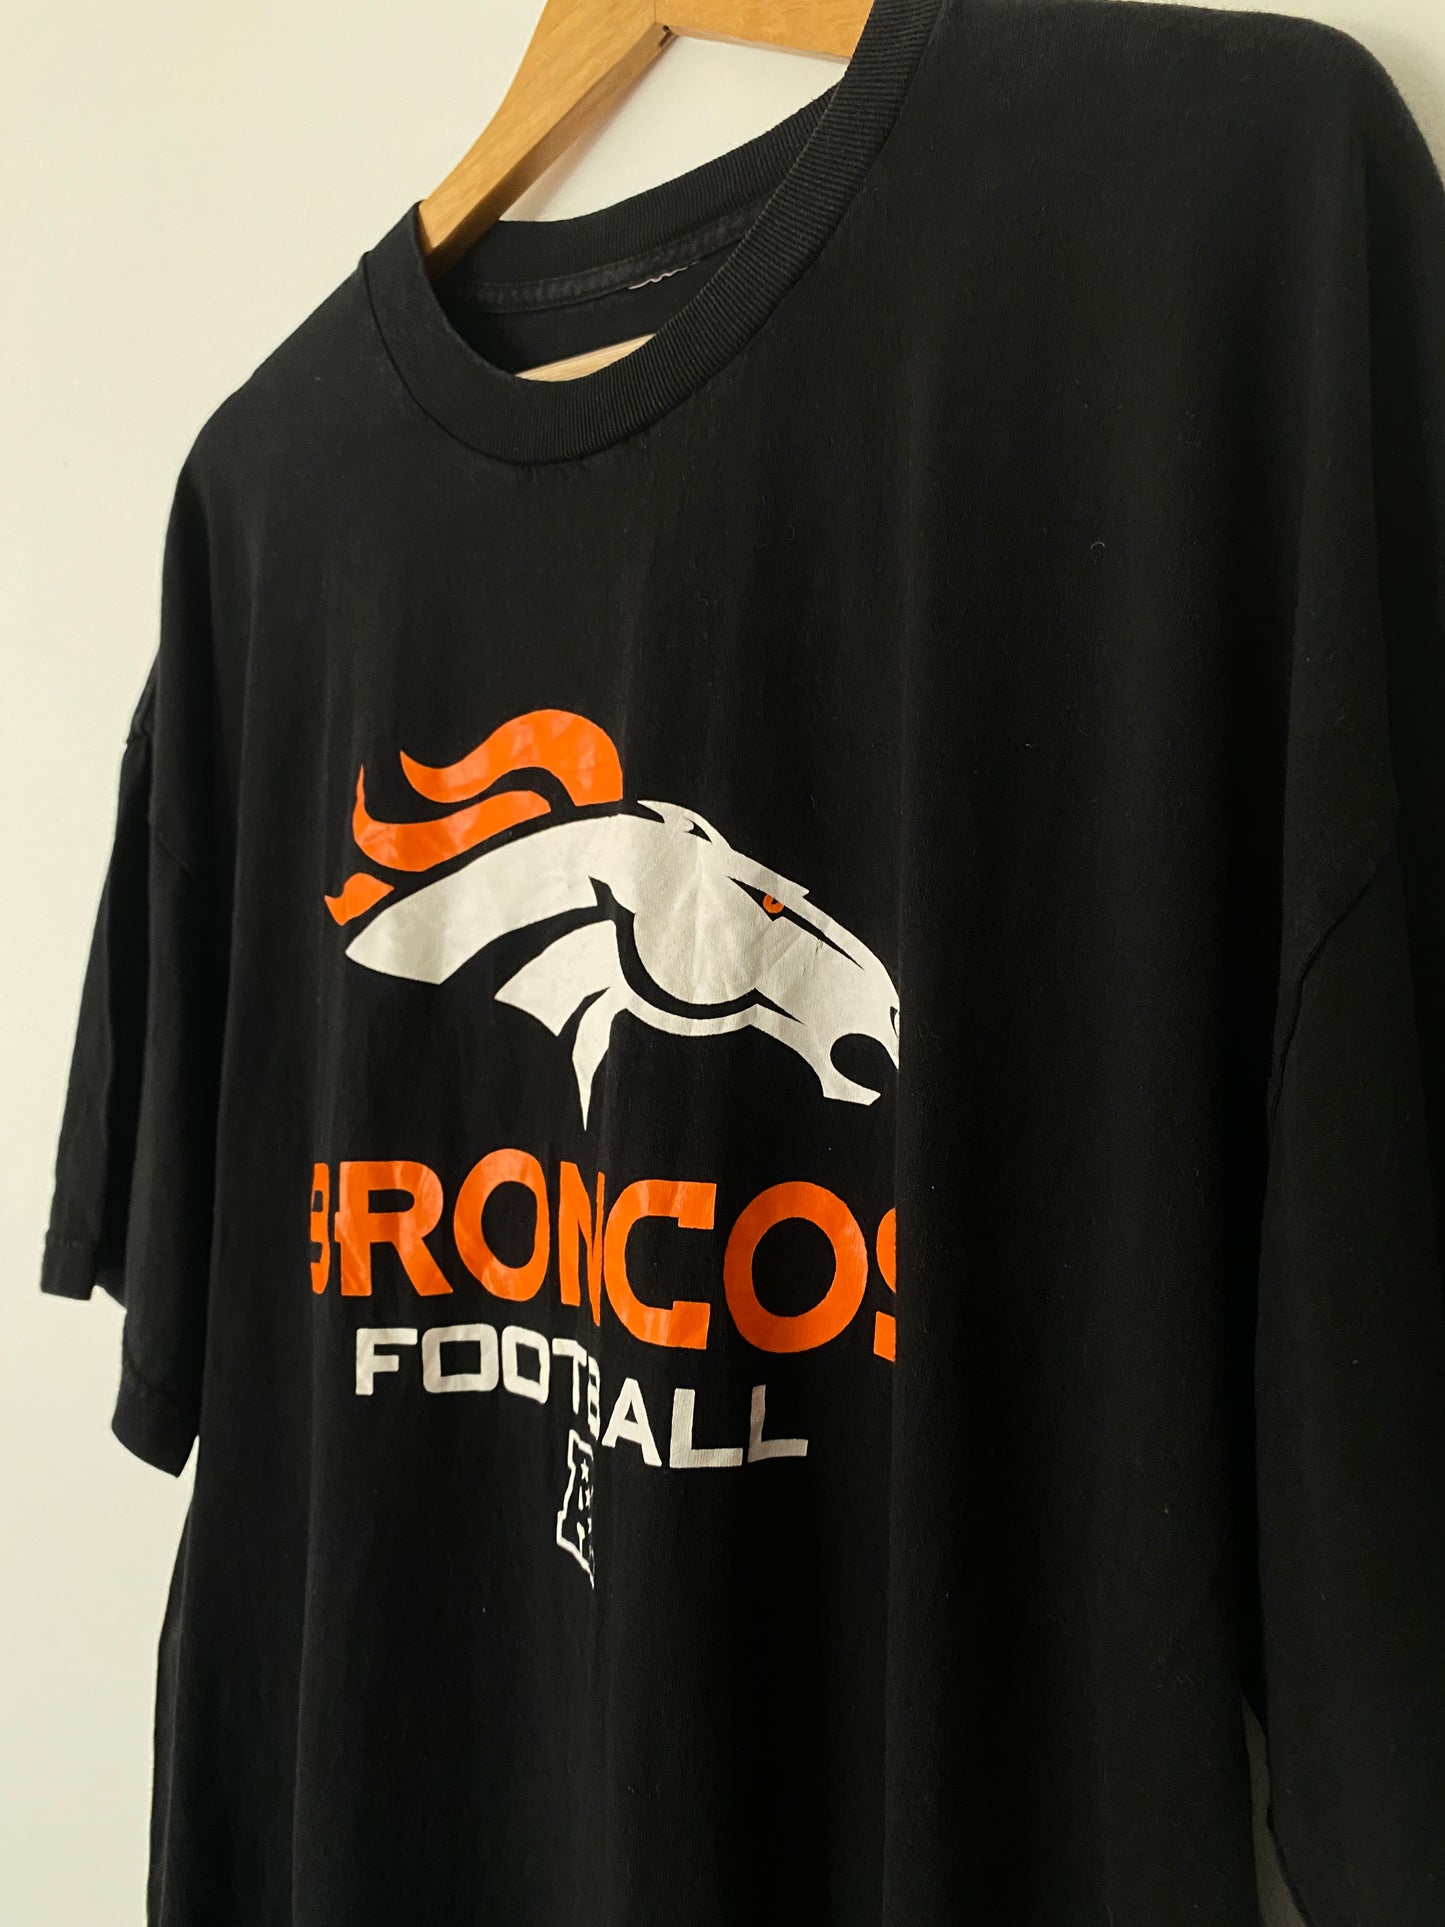 Denver Broncos Football T-Shirt - XL